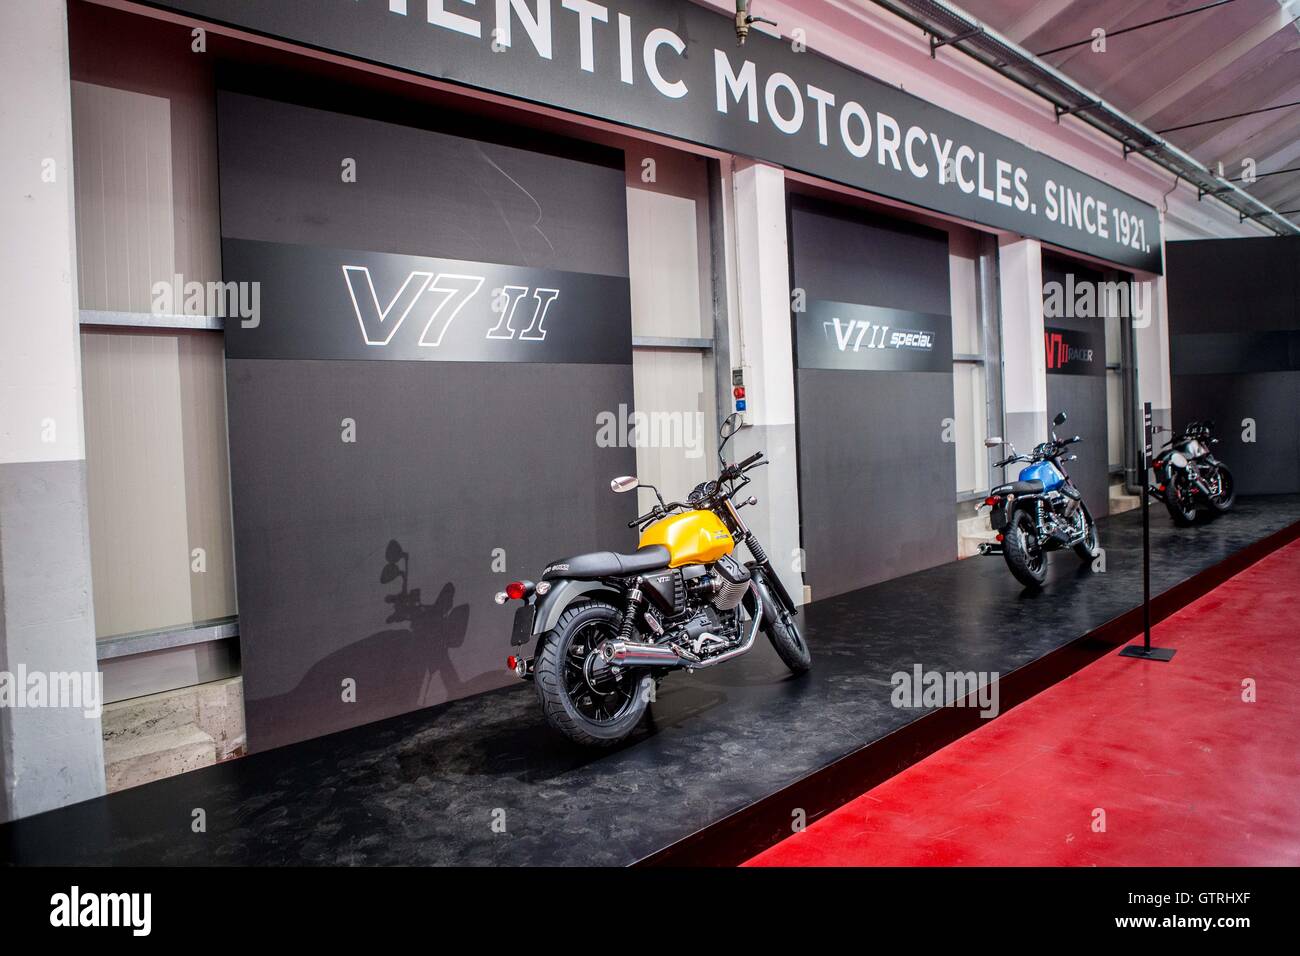 Moto Guzzi Open House 2016 - Motoraduno Moto Guzzi at Mandello del Lario in Italy Stock Photo